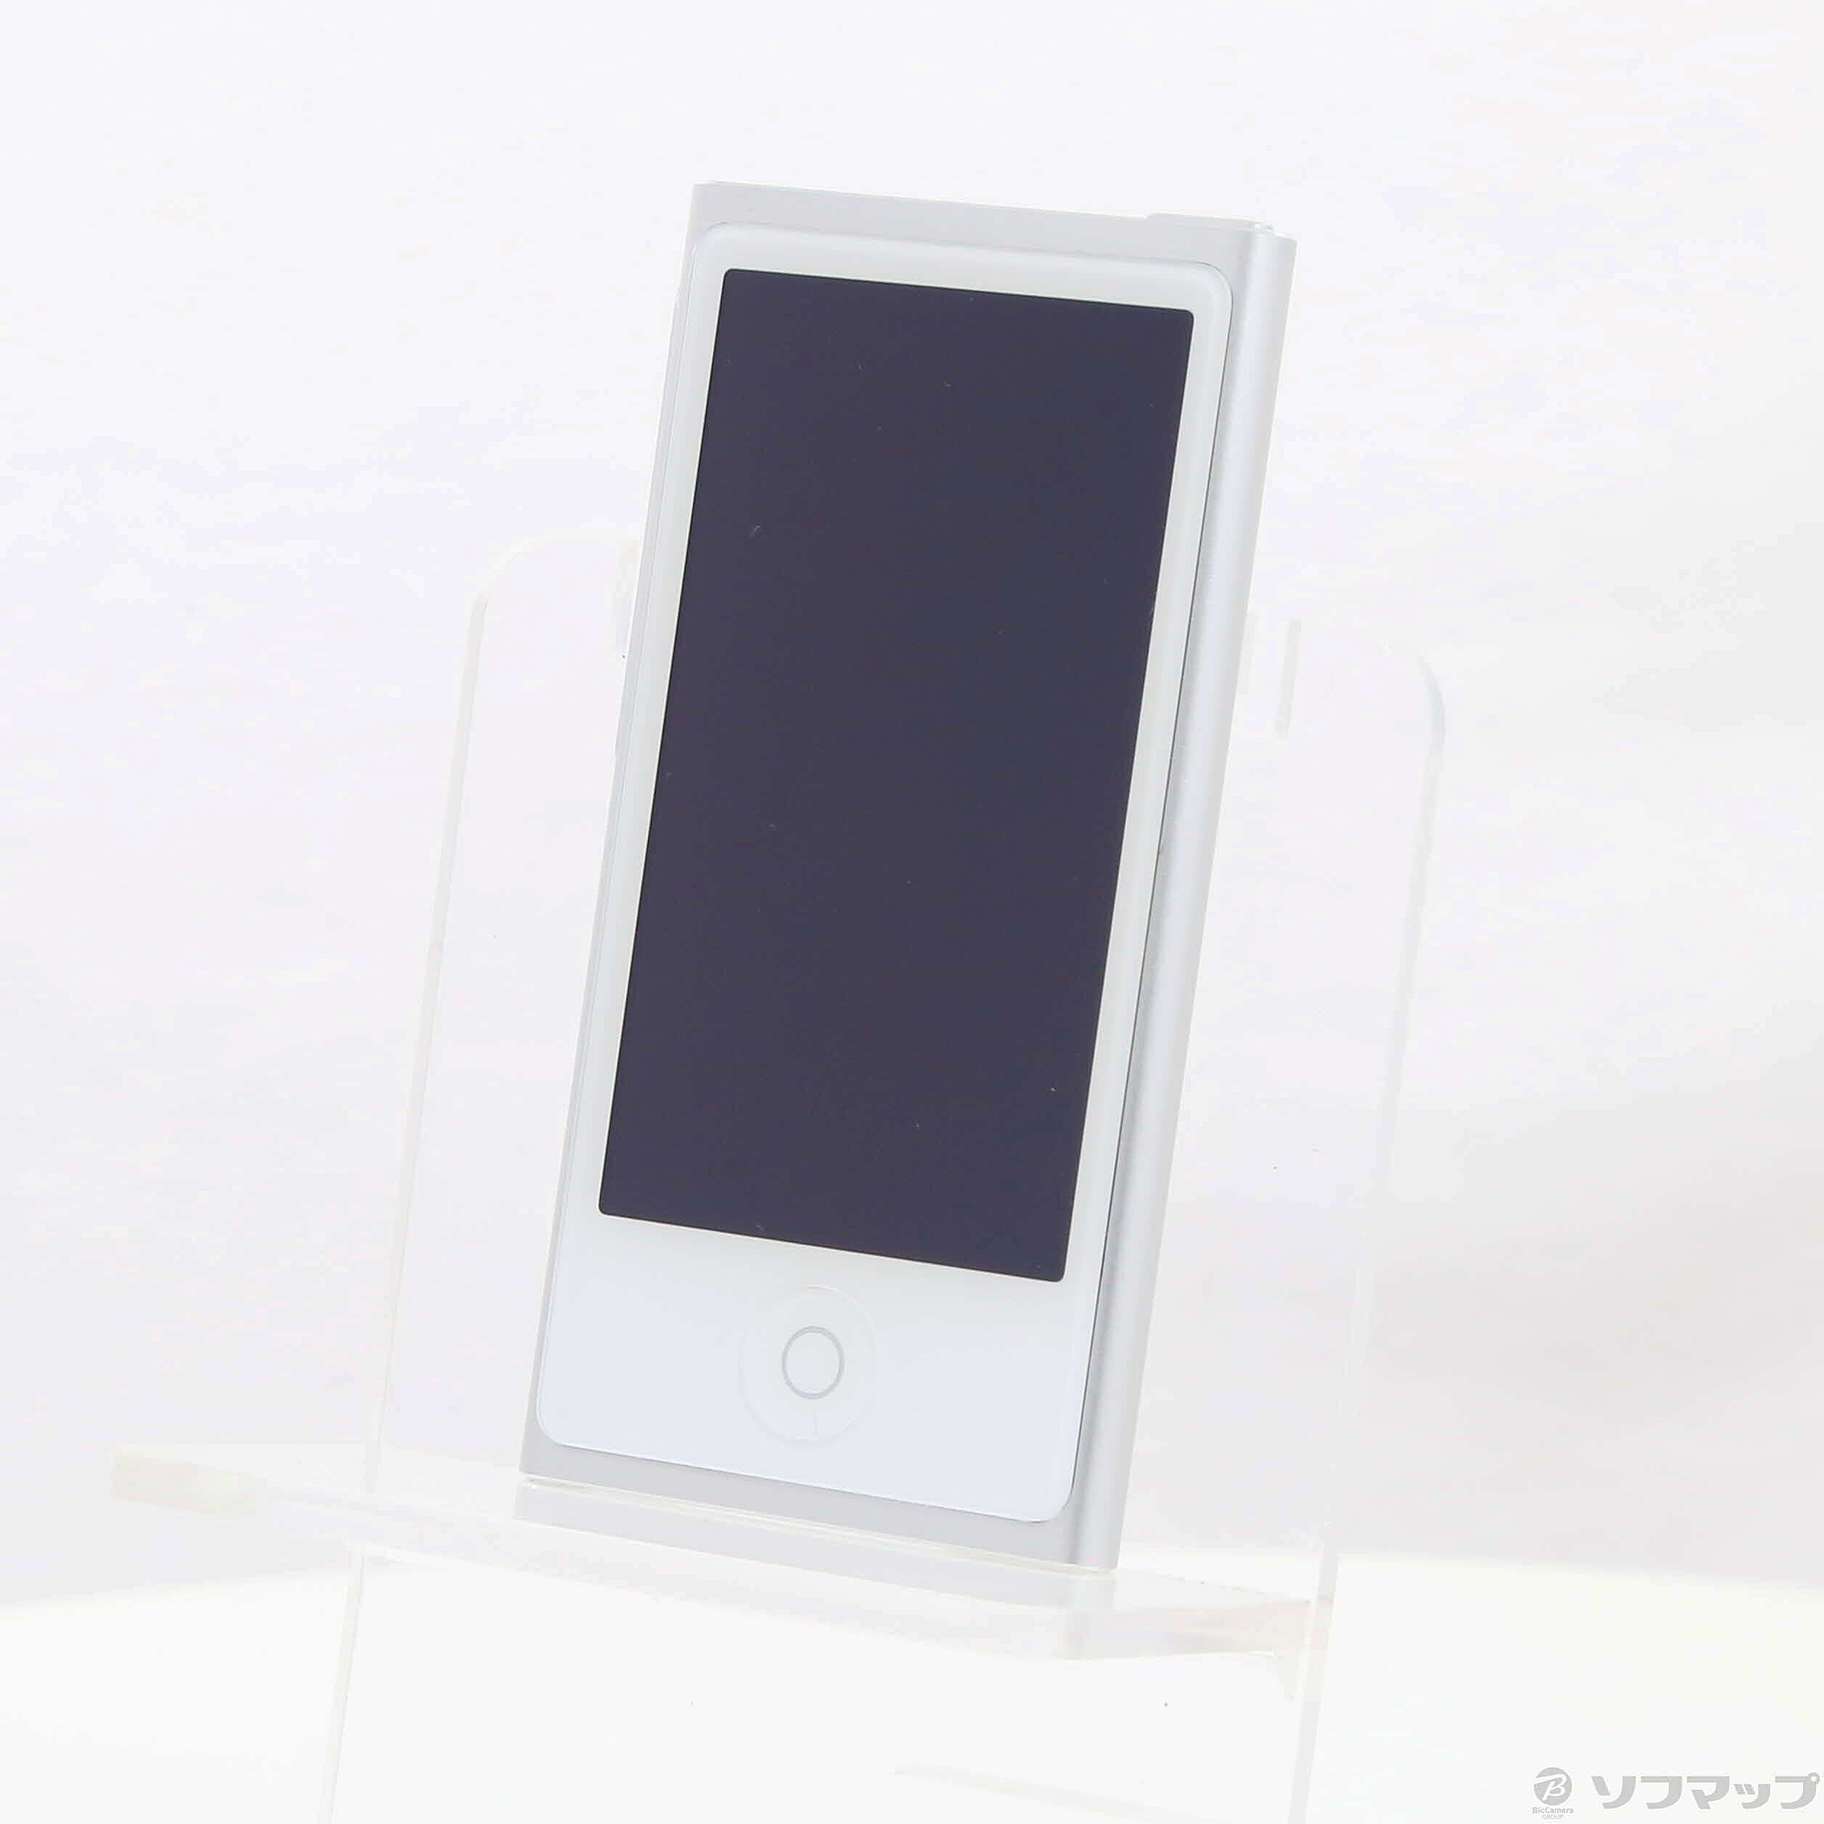 【新品未使用】iPod nano 第7世代 16GB シルバー